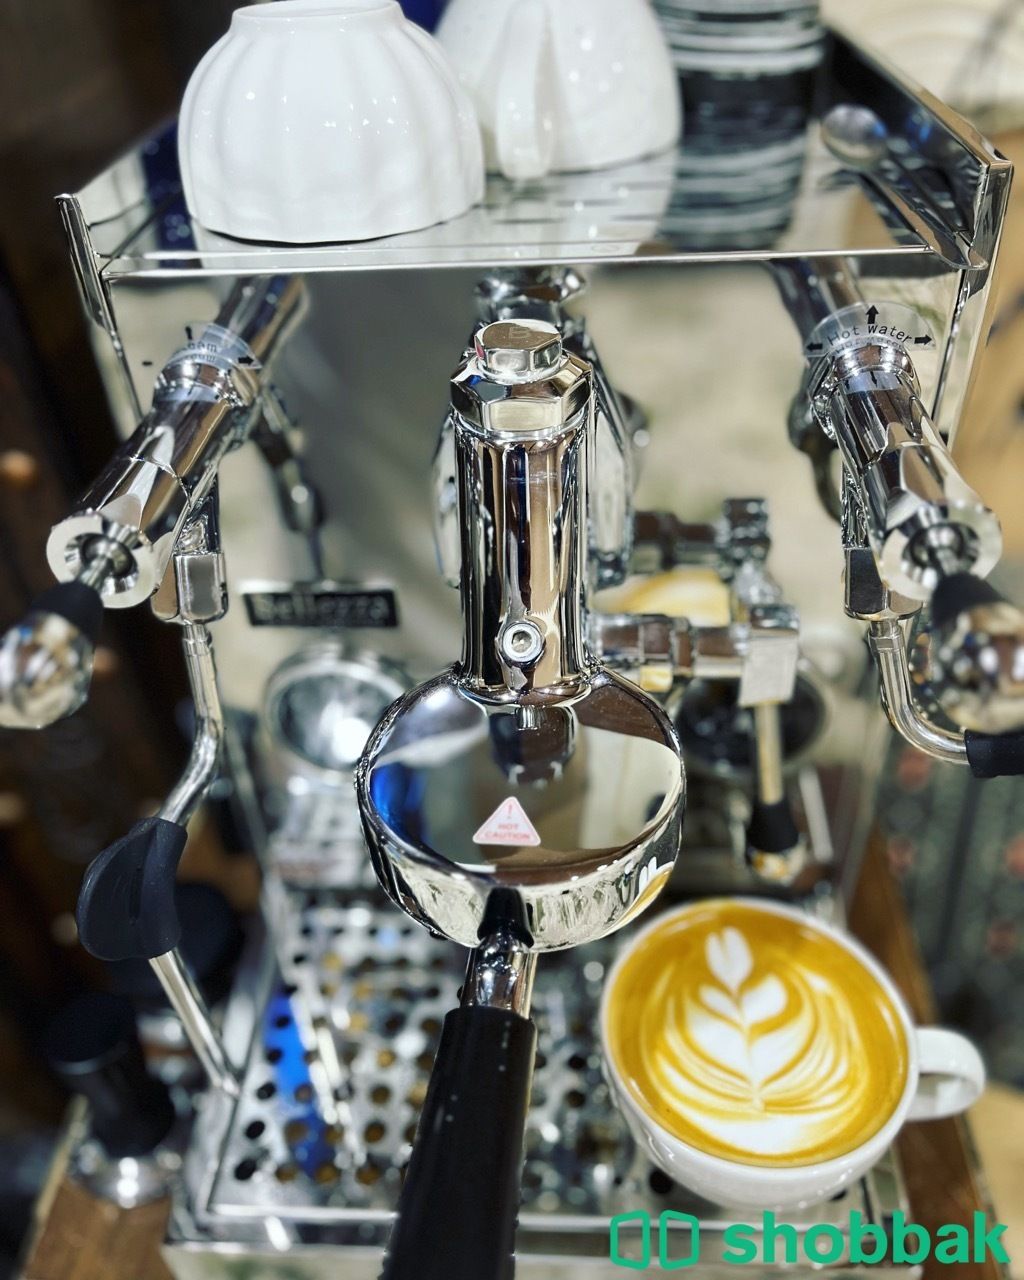 مكينة قهوة احترافية بيليزا فرانشيسكا الاحترافية شباك السعودية